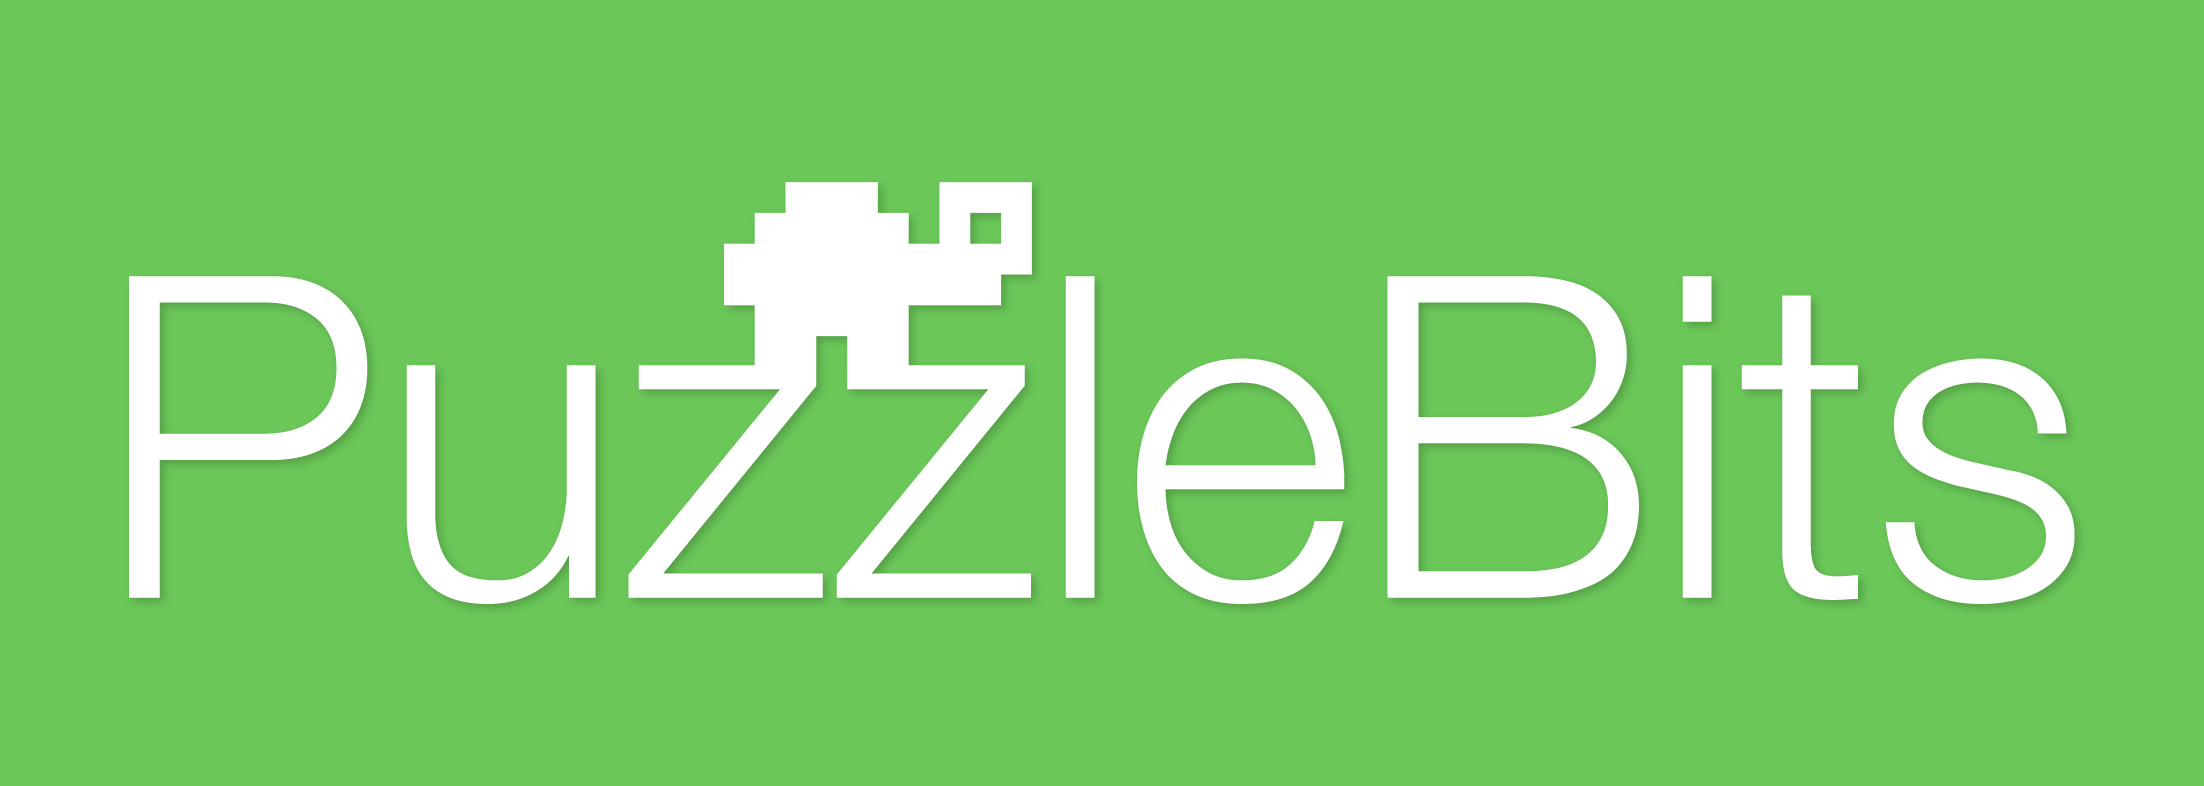 PuzzleBitsLogo